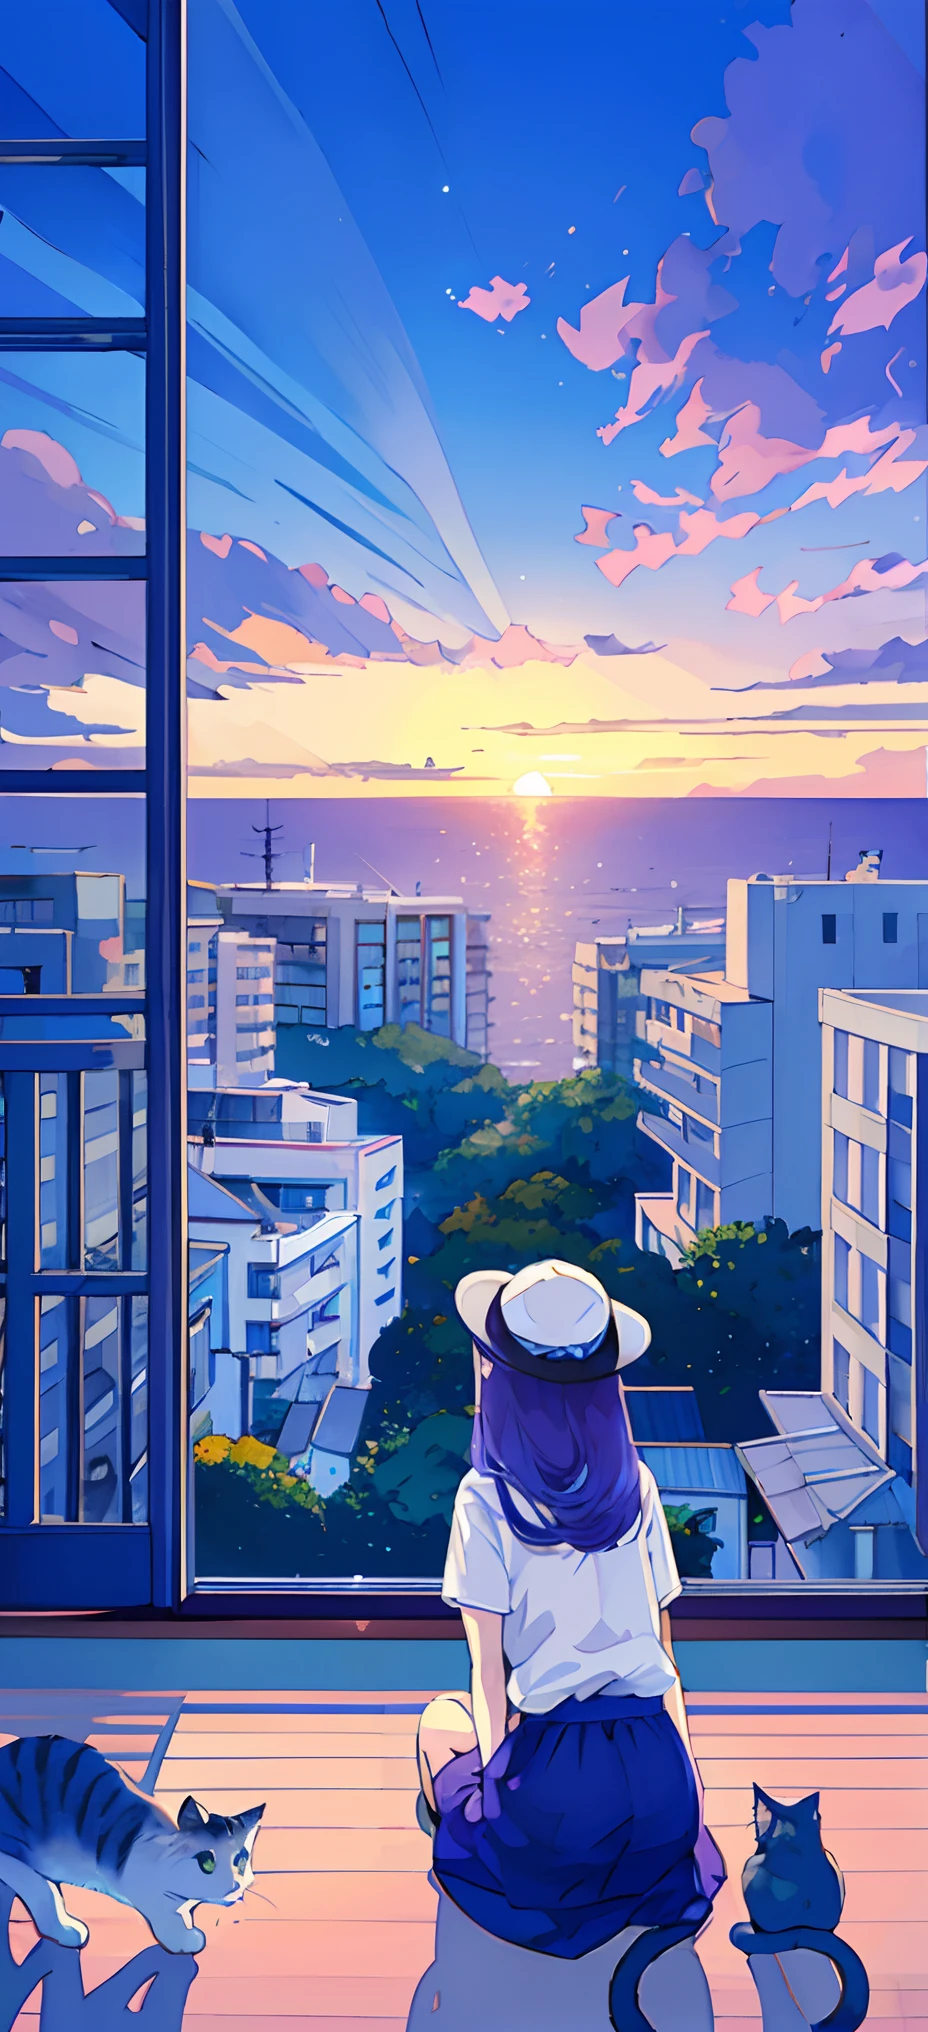 Camiseta azul、Usando un sombrero blanco、((gatos))、Una ciudad junto al mar、pequeño lindo、Mira atrás、en 8K、tamaño de archivo grande、Cuando estás mirando a tu audiencia、 Con vistas al paisaje urbano、medianoche,el detalle、pelo largo,Colores Pastel、cabello purpura